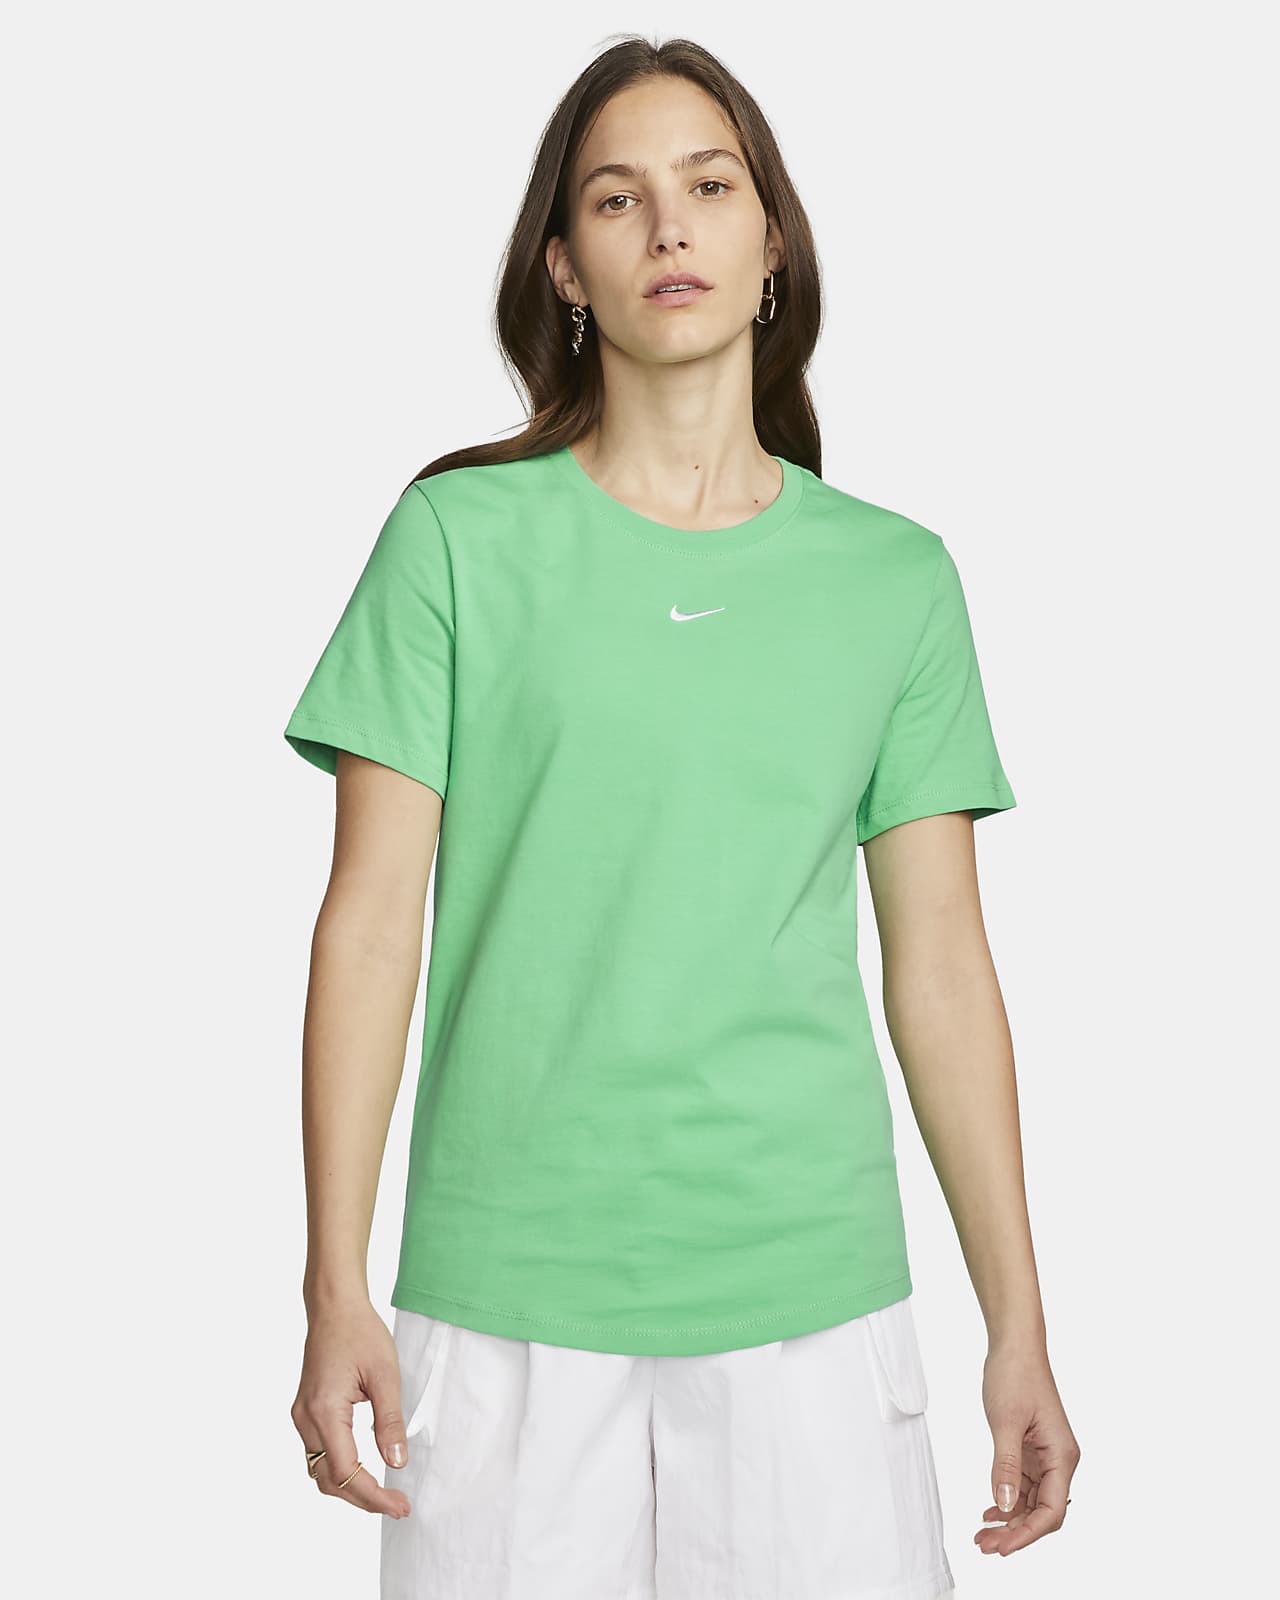 Huiswerk maken wasserette Het strand Nike Sportswear Essential Women's T-Shirt. Nike.com